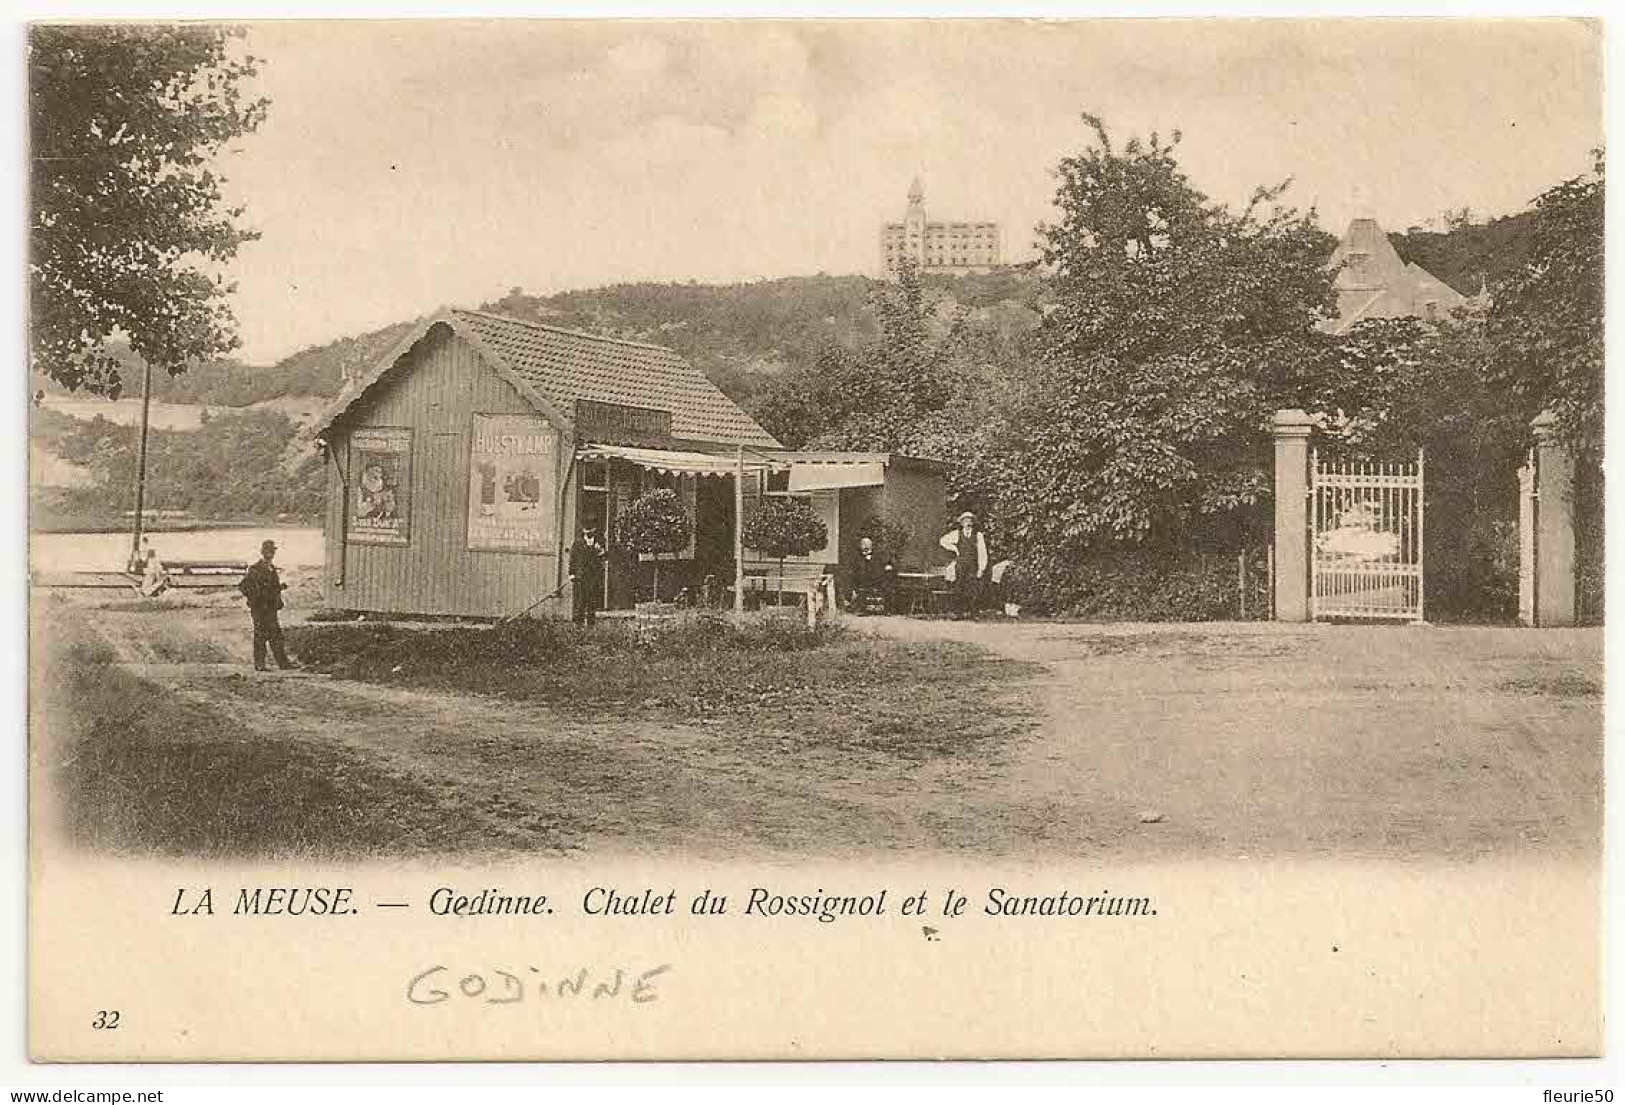 La Meuse - GODINNE (Yvoir) Chalet Du Rossignol Et Le Sanatorium. Oblitération Dinant 1903 Vers Jette Saint Pierre. - Yvoir